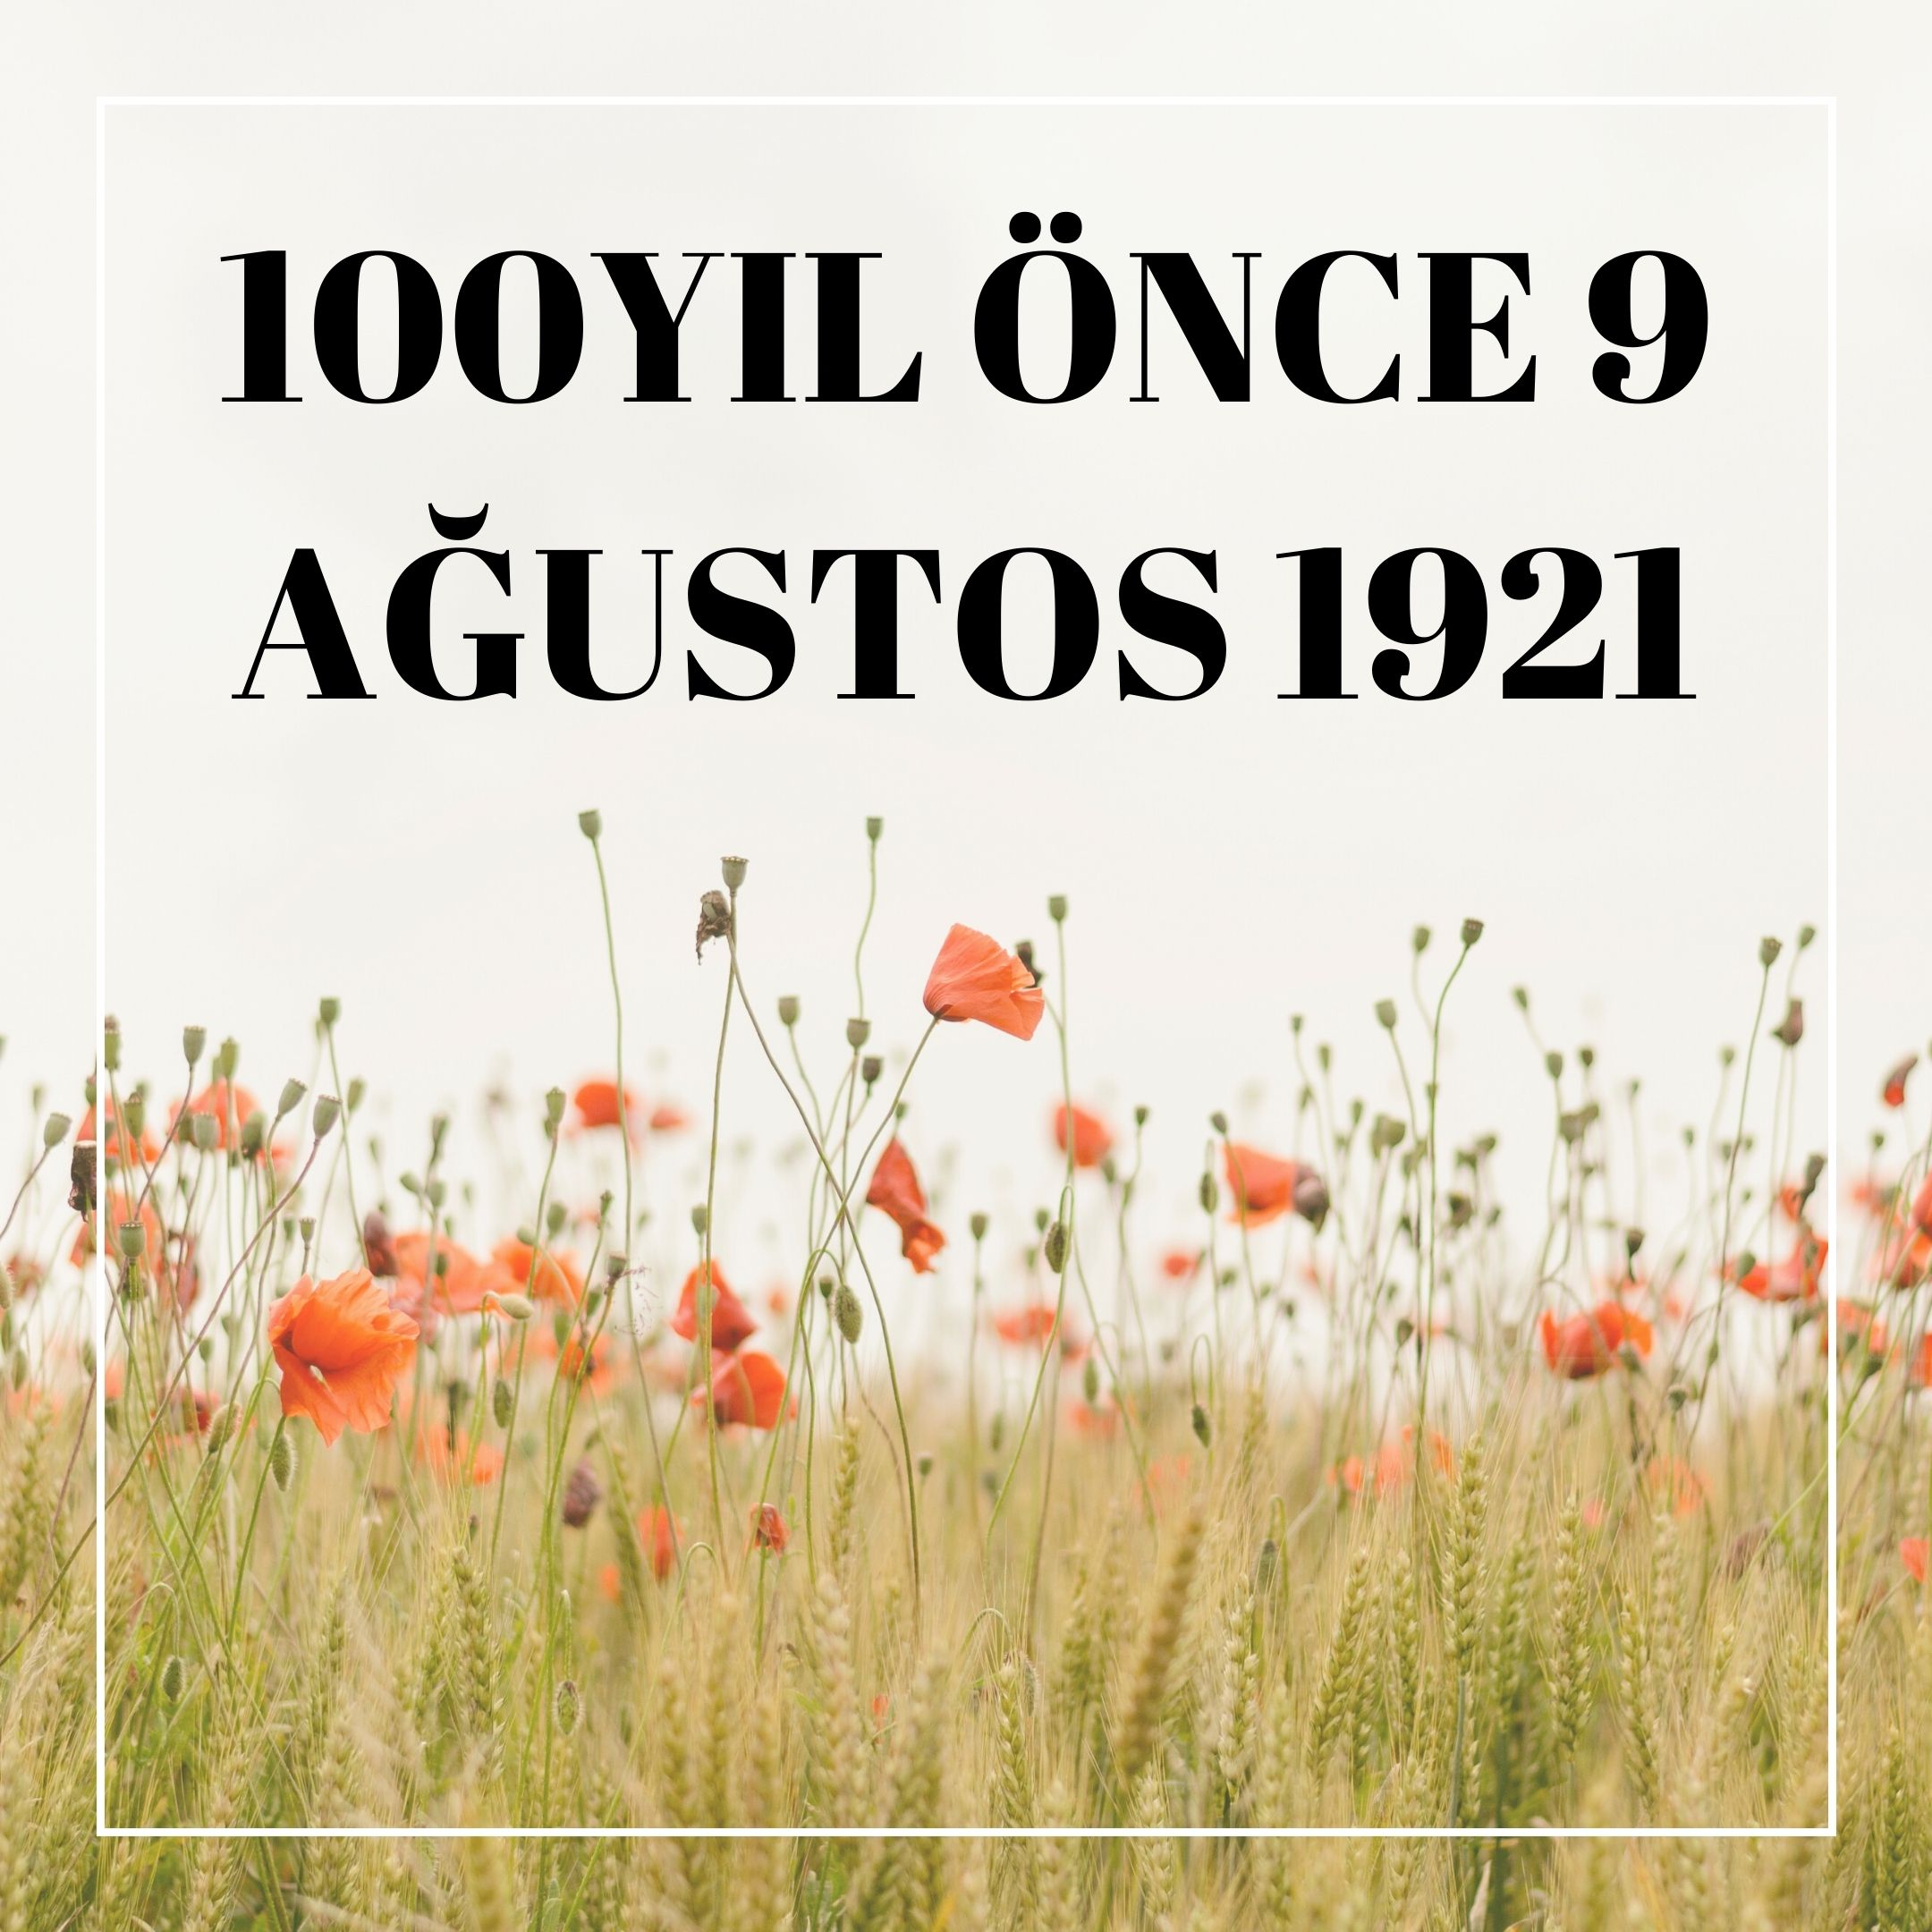 100 YIL ÖNCE 9 AĞUSTOS 1921